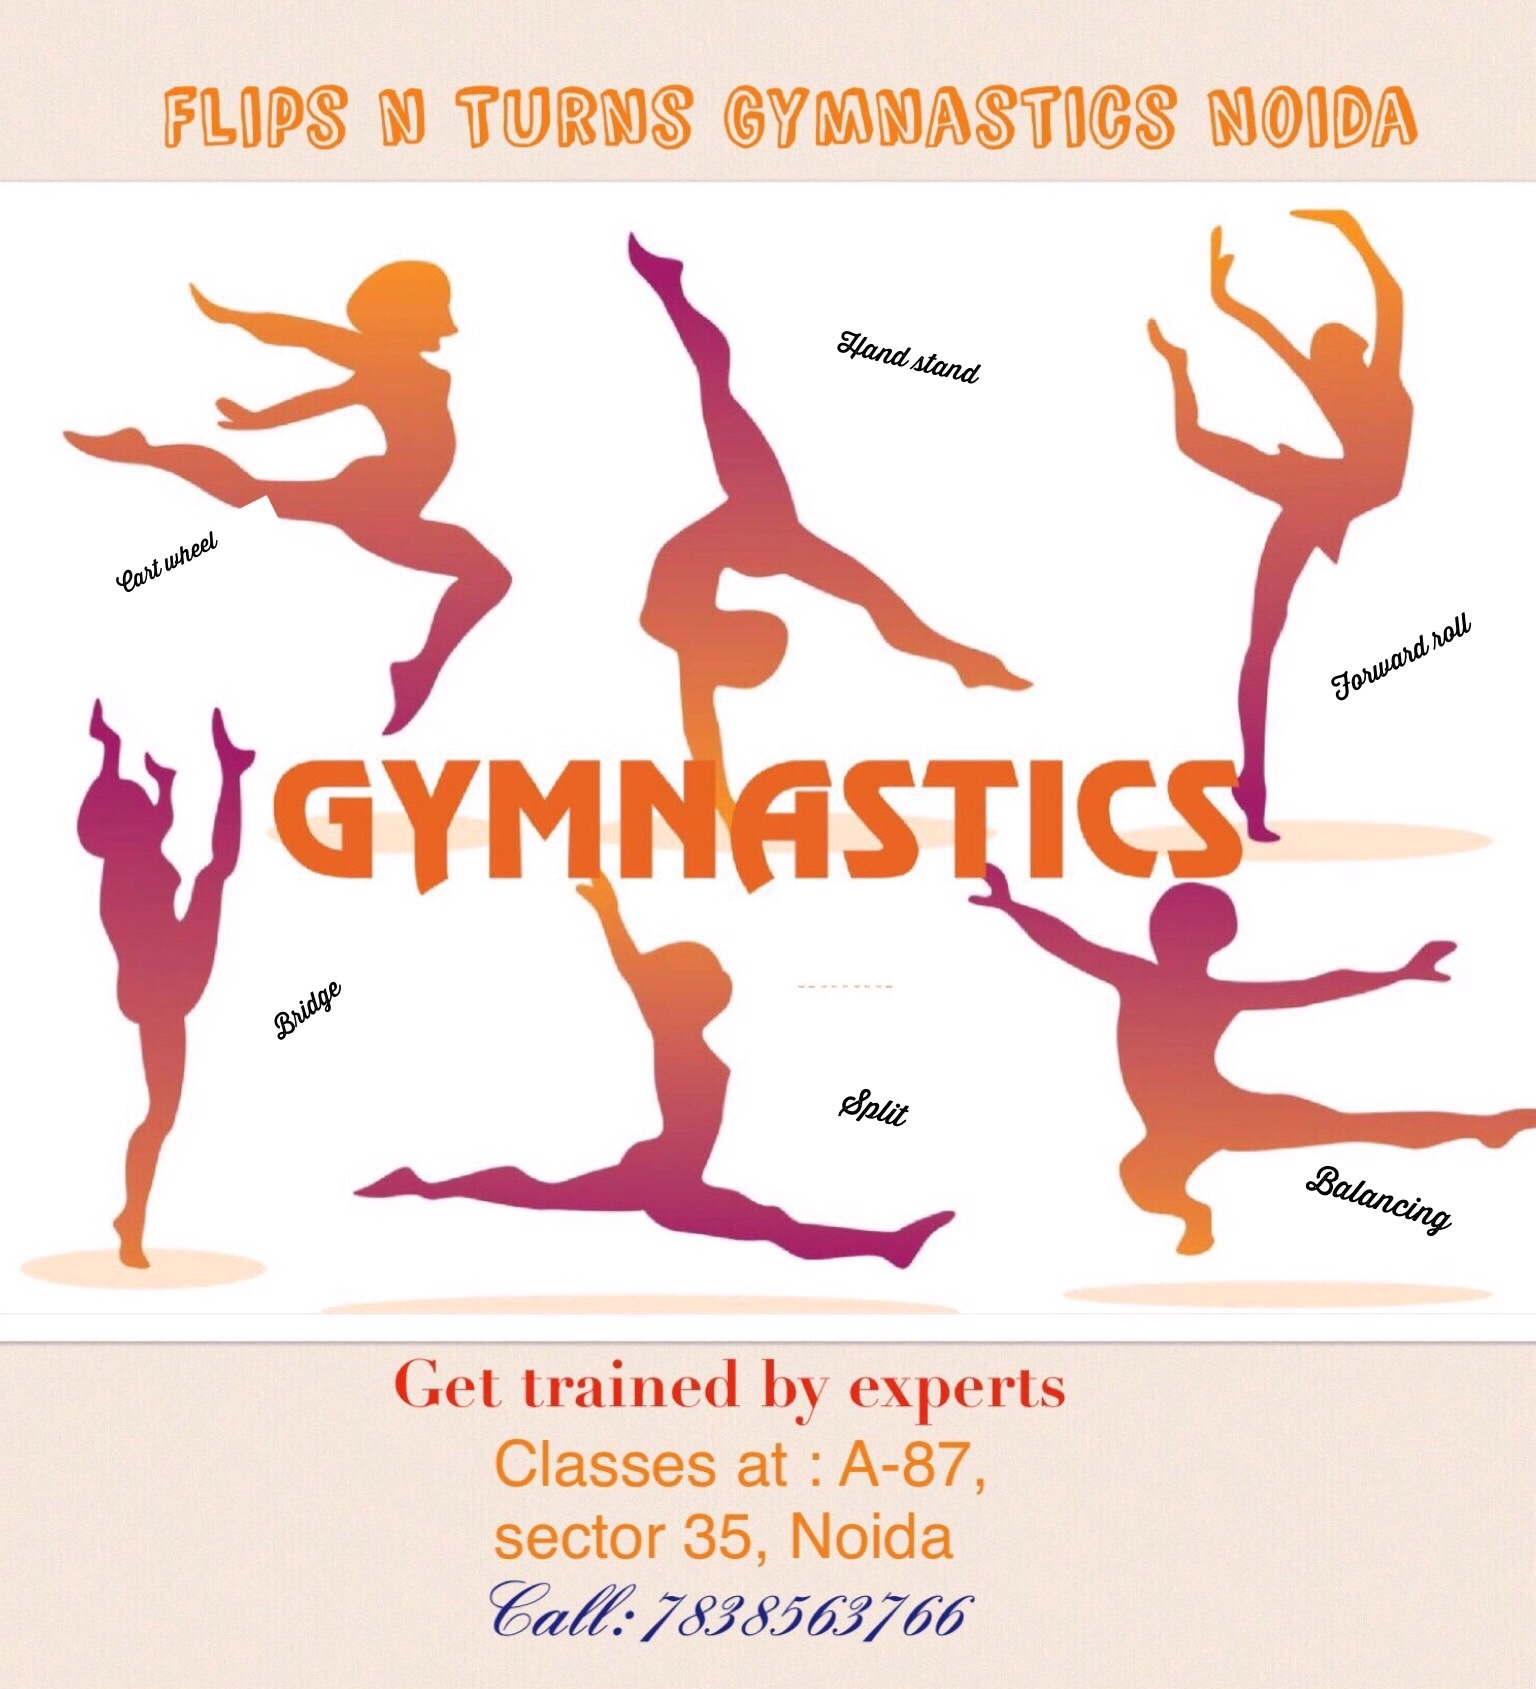 online gymnastics classes in delhi